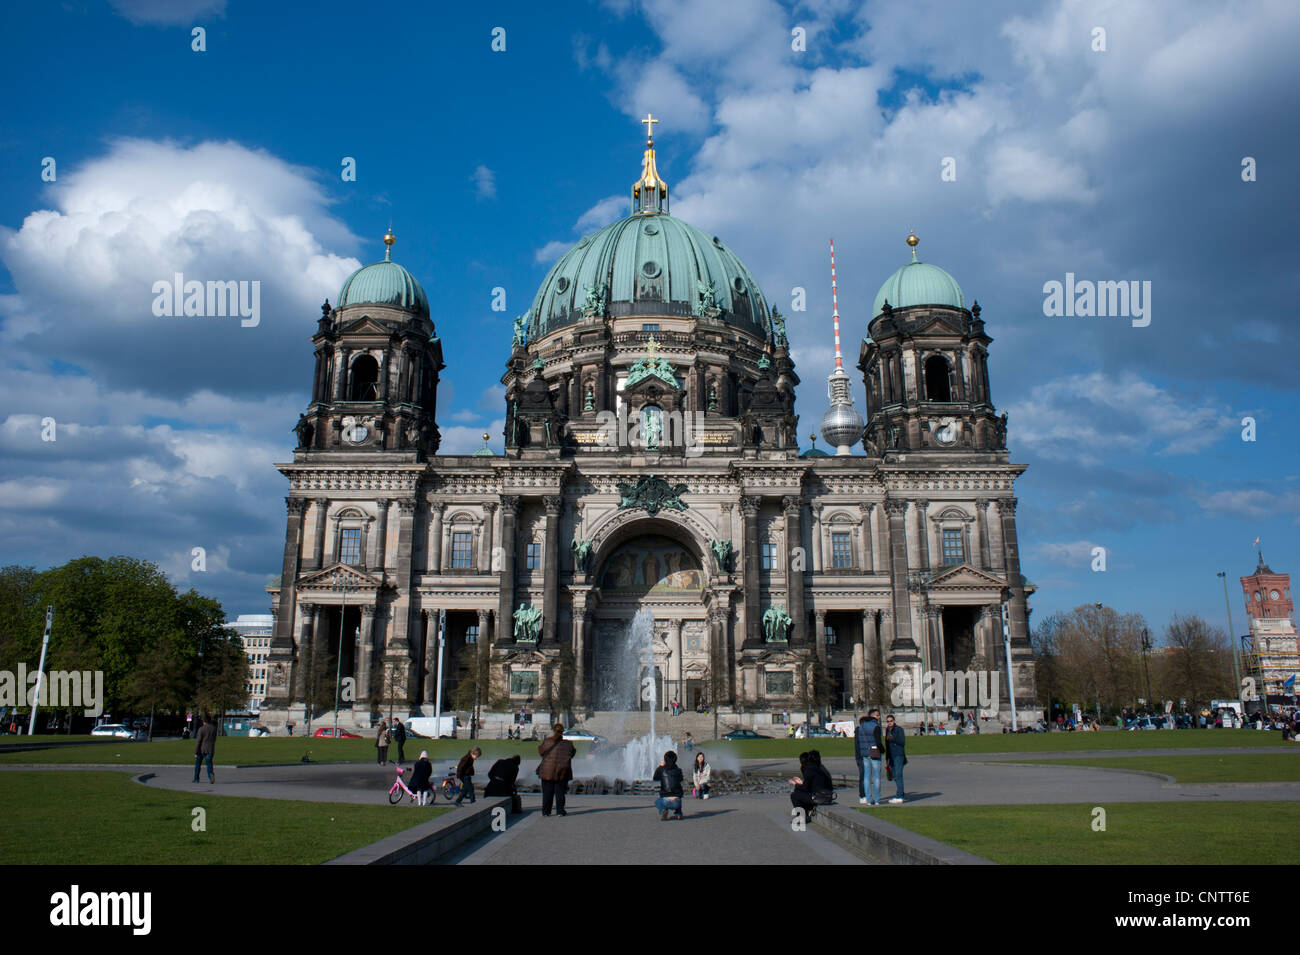 La Cathédrale de Berlin, situé sur l'île aux musées de Berlin Mitte, lors d'une journée ensoleillée Banque D'Images